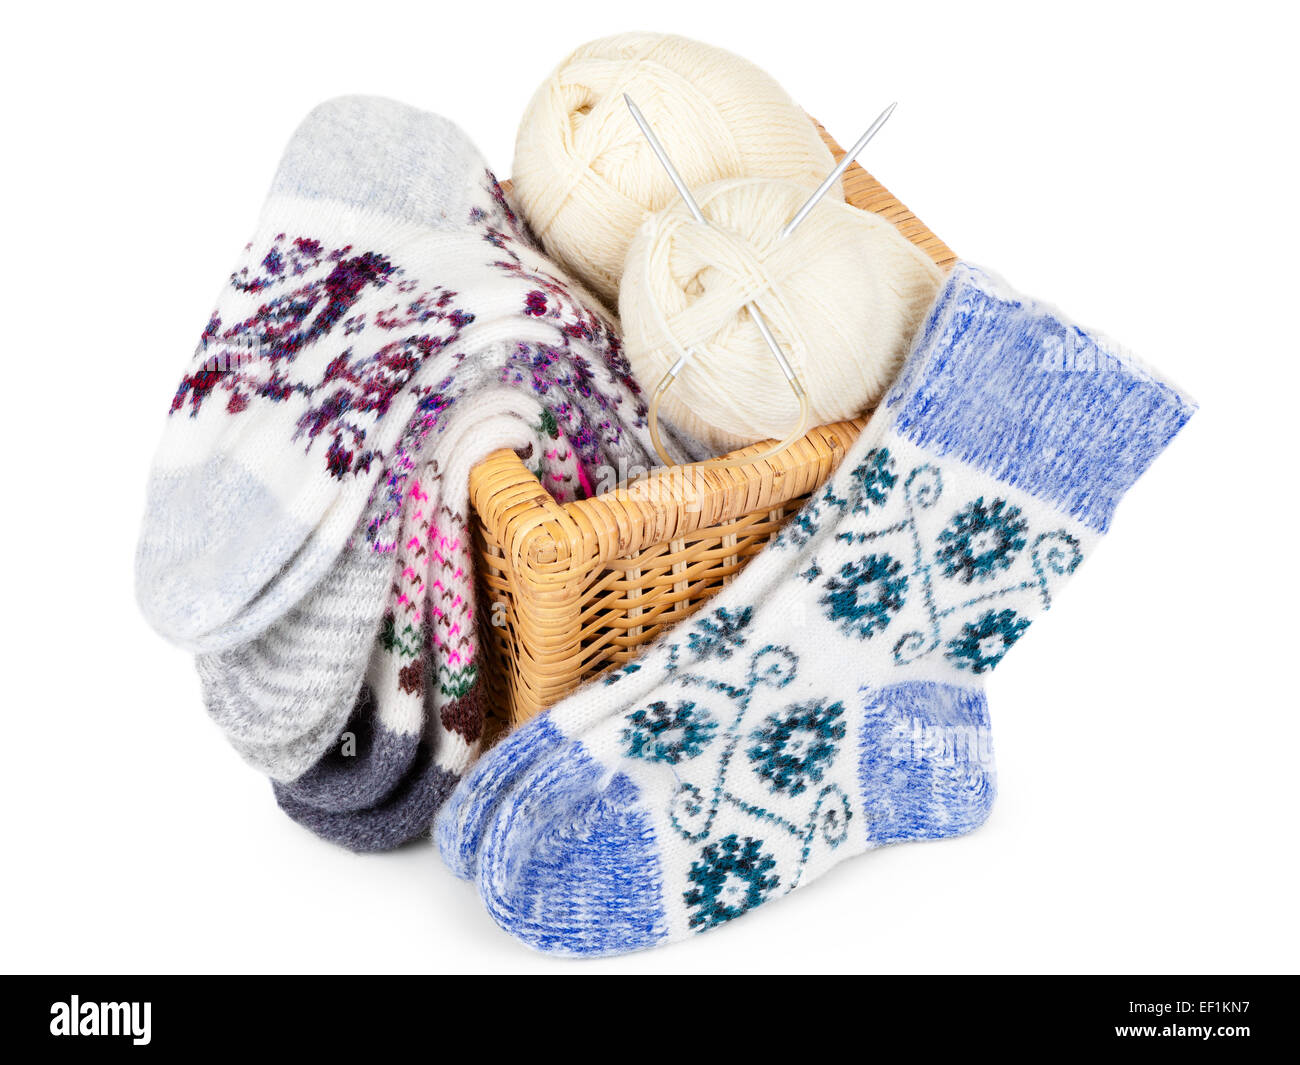 Calcetines tejidos, cesta y bolas de hilo con agujas de tejer Foto de stock